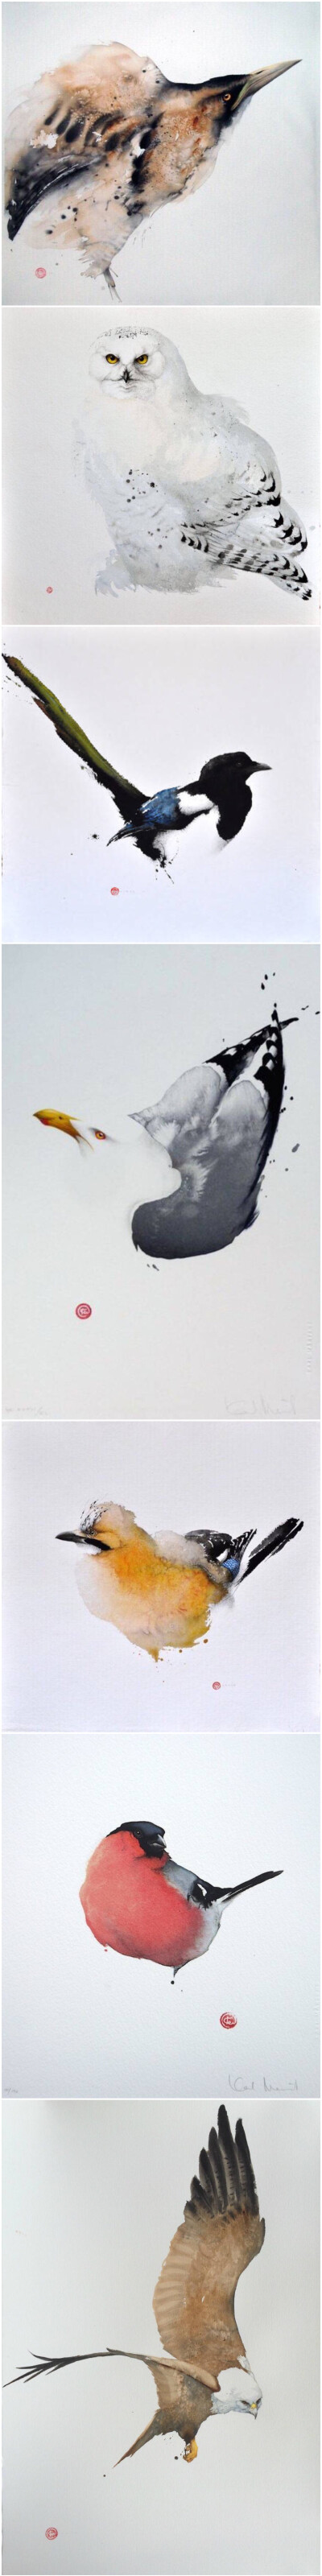 美国旧金山画家 Karl Martens （1956—）绘制的水彩鸟类绘画作品 